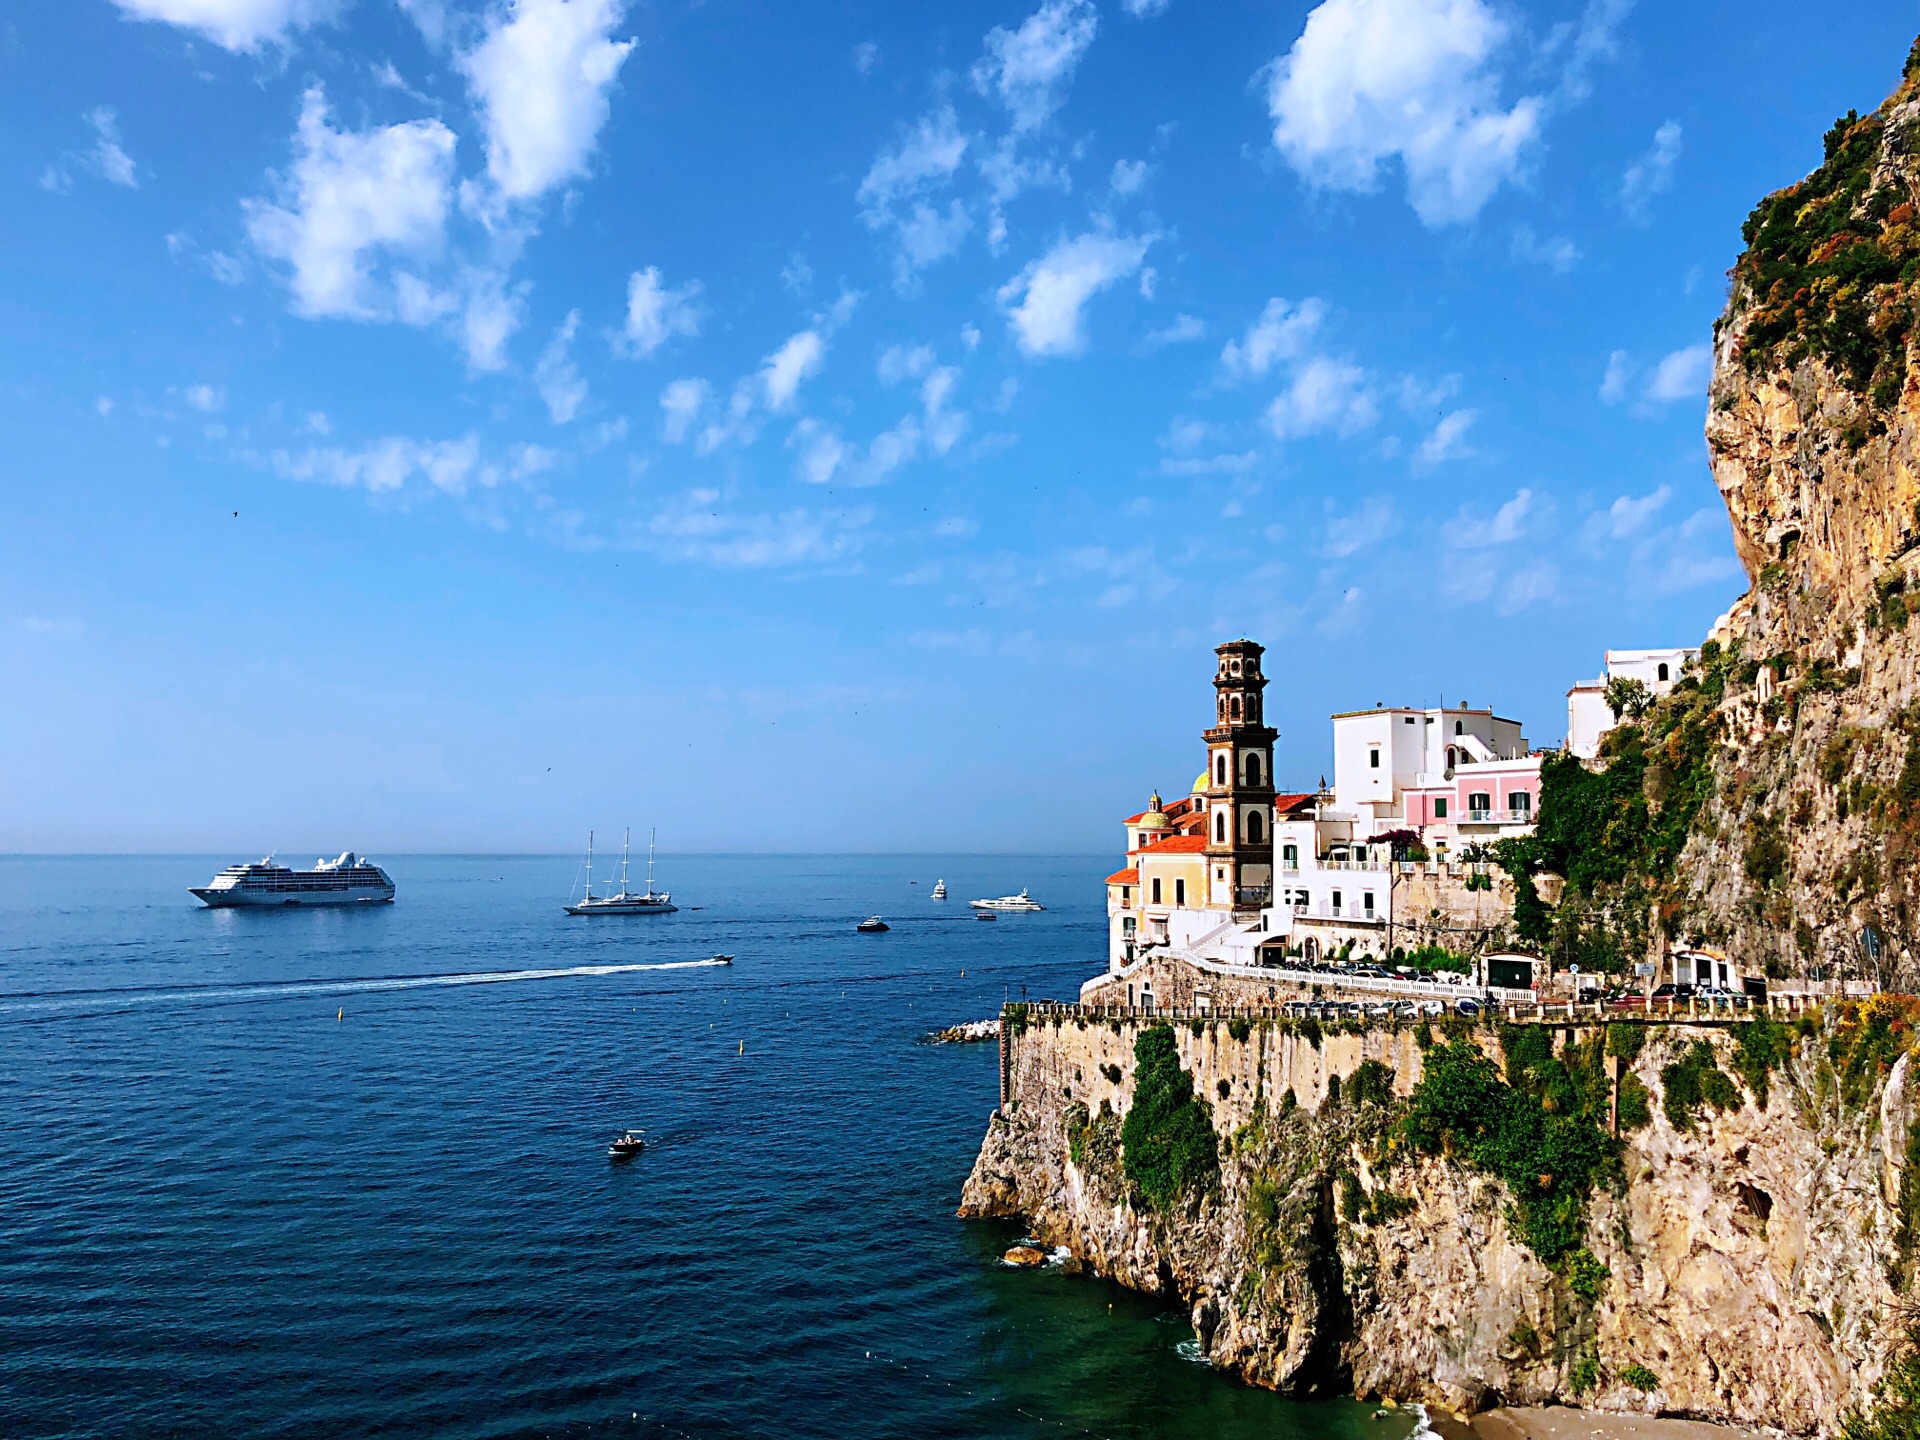 義大利阿瑪菲海岸Amalfi Coast｜列名聞世界文化遺產的絕景海岸線。 - 卡瓦納＠京都 自由滯在。